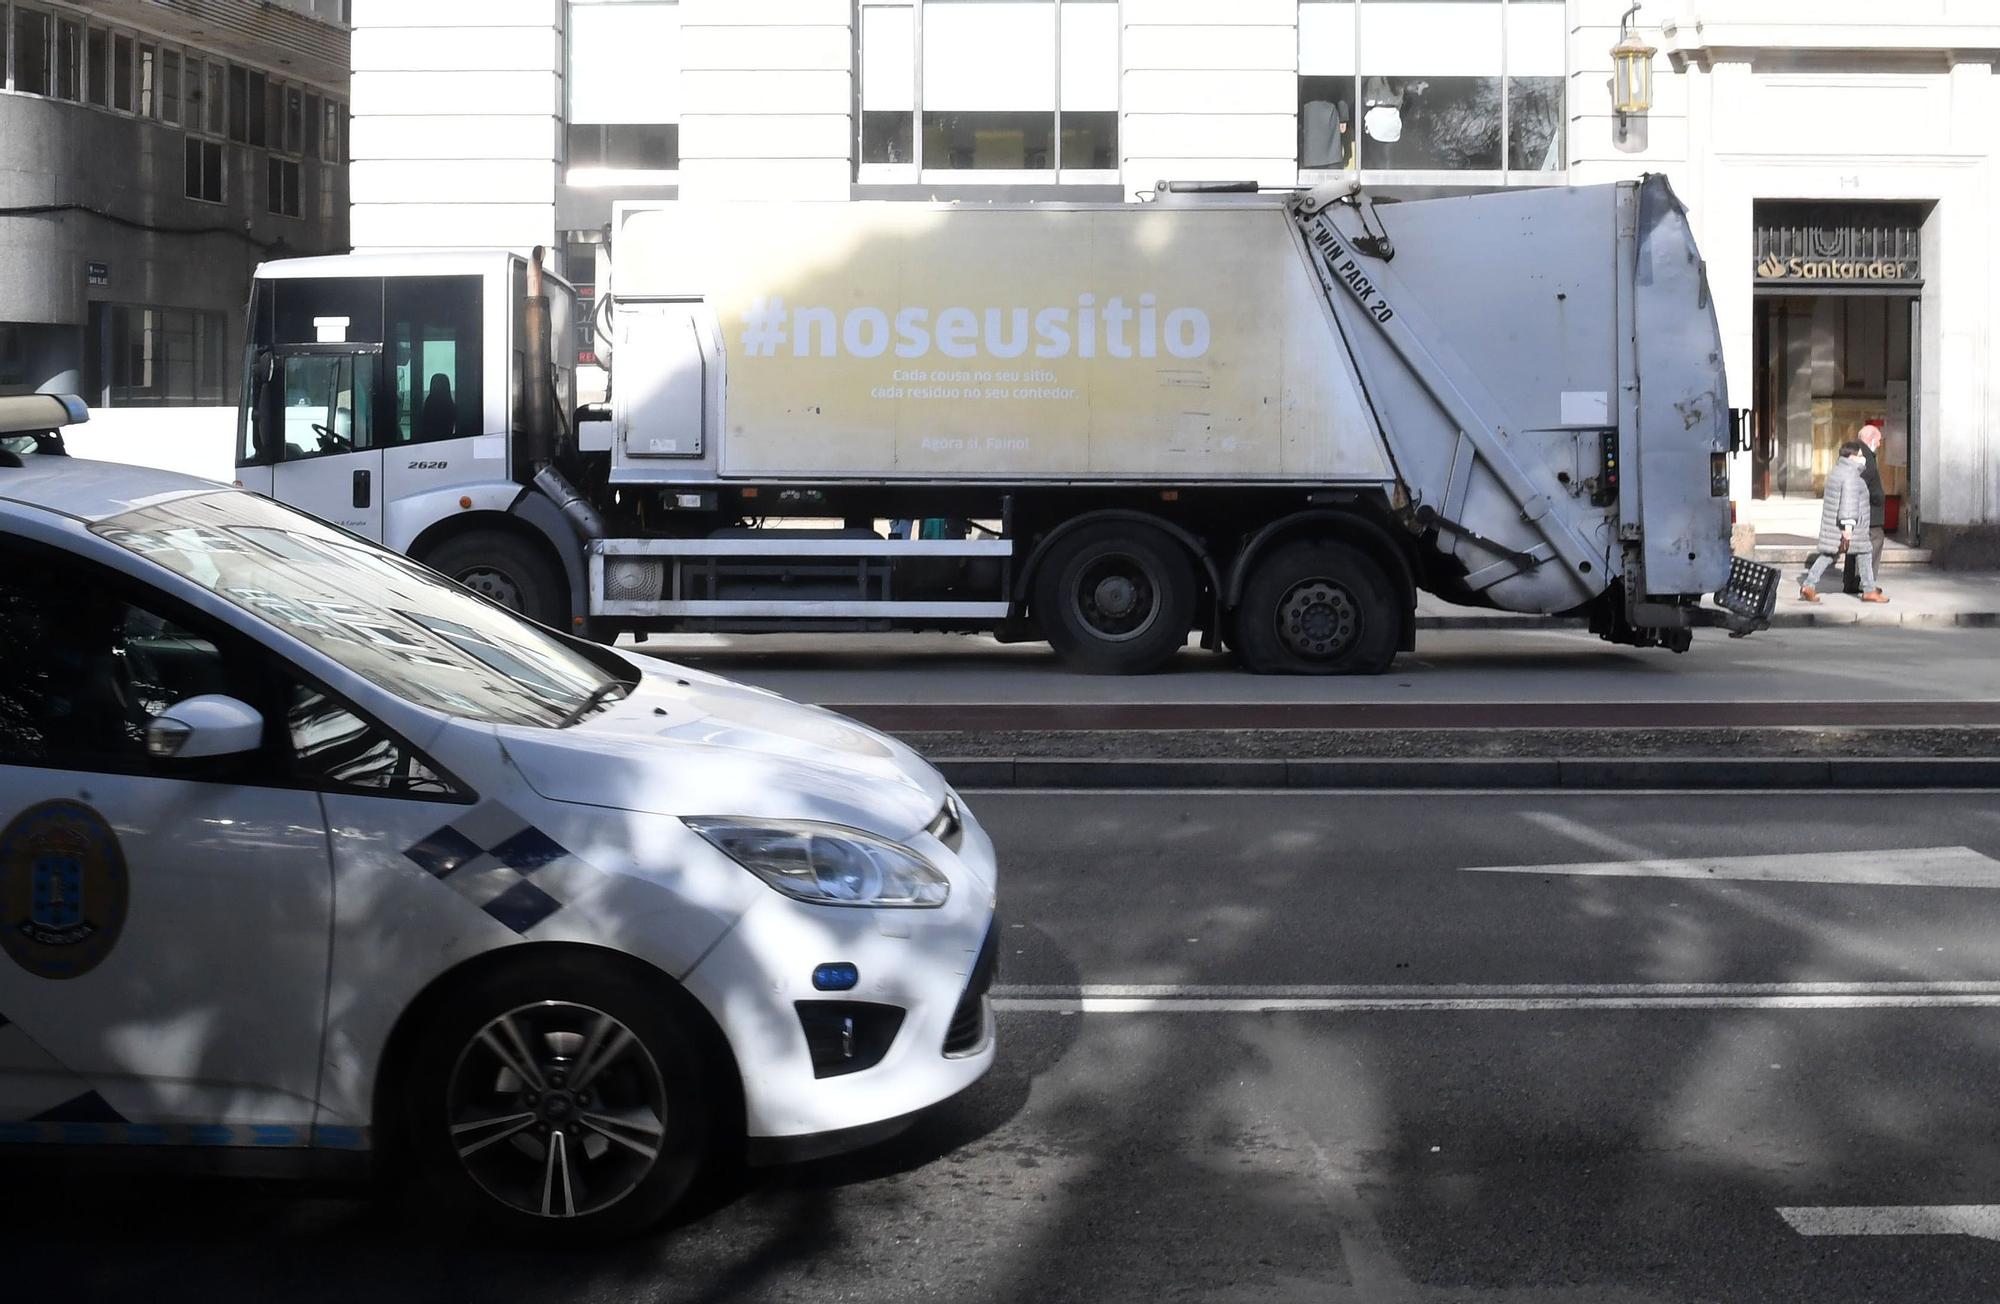 El Concello denuncia el "sabotaje" a al menos una veintena de camiones de la recogida de basura en A Coruña